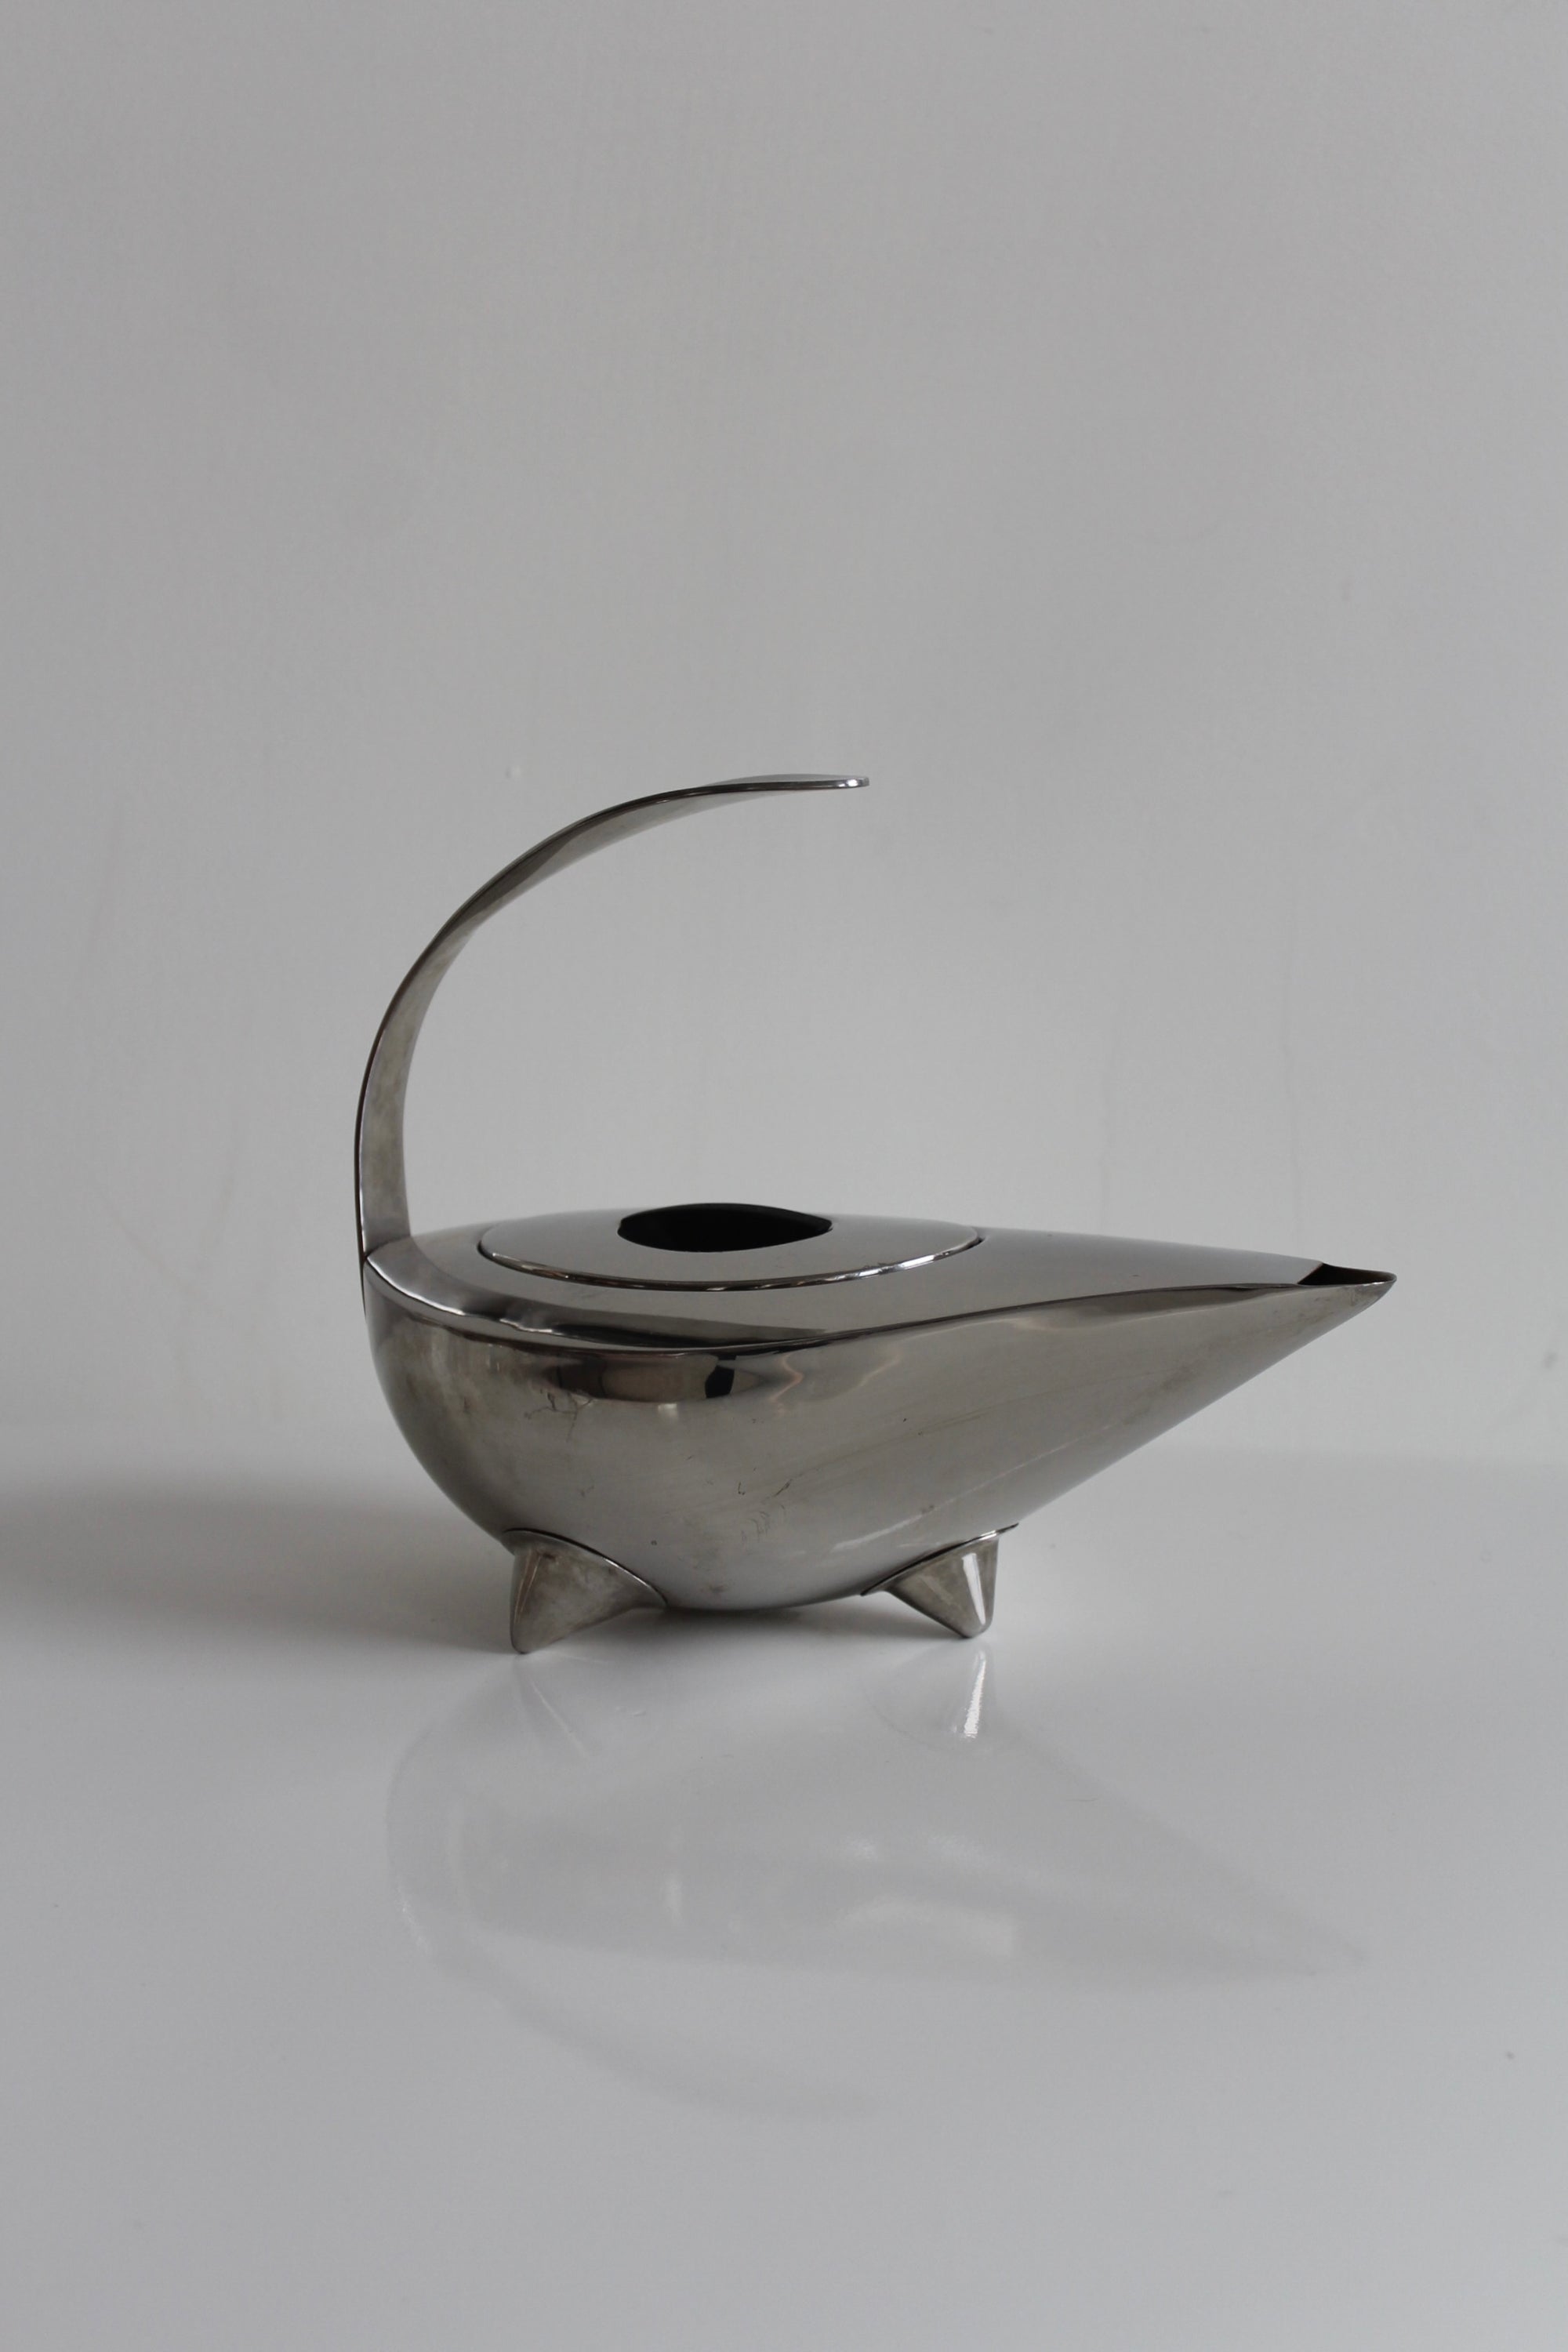 Naoko Teapot by Carsten Jorgensen for Bodum